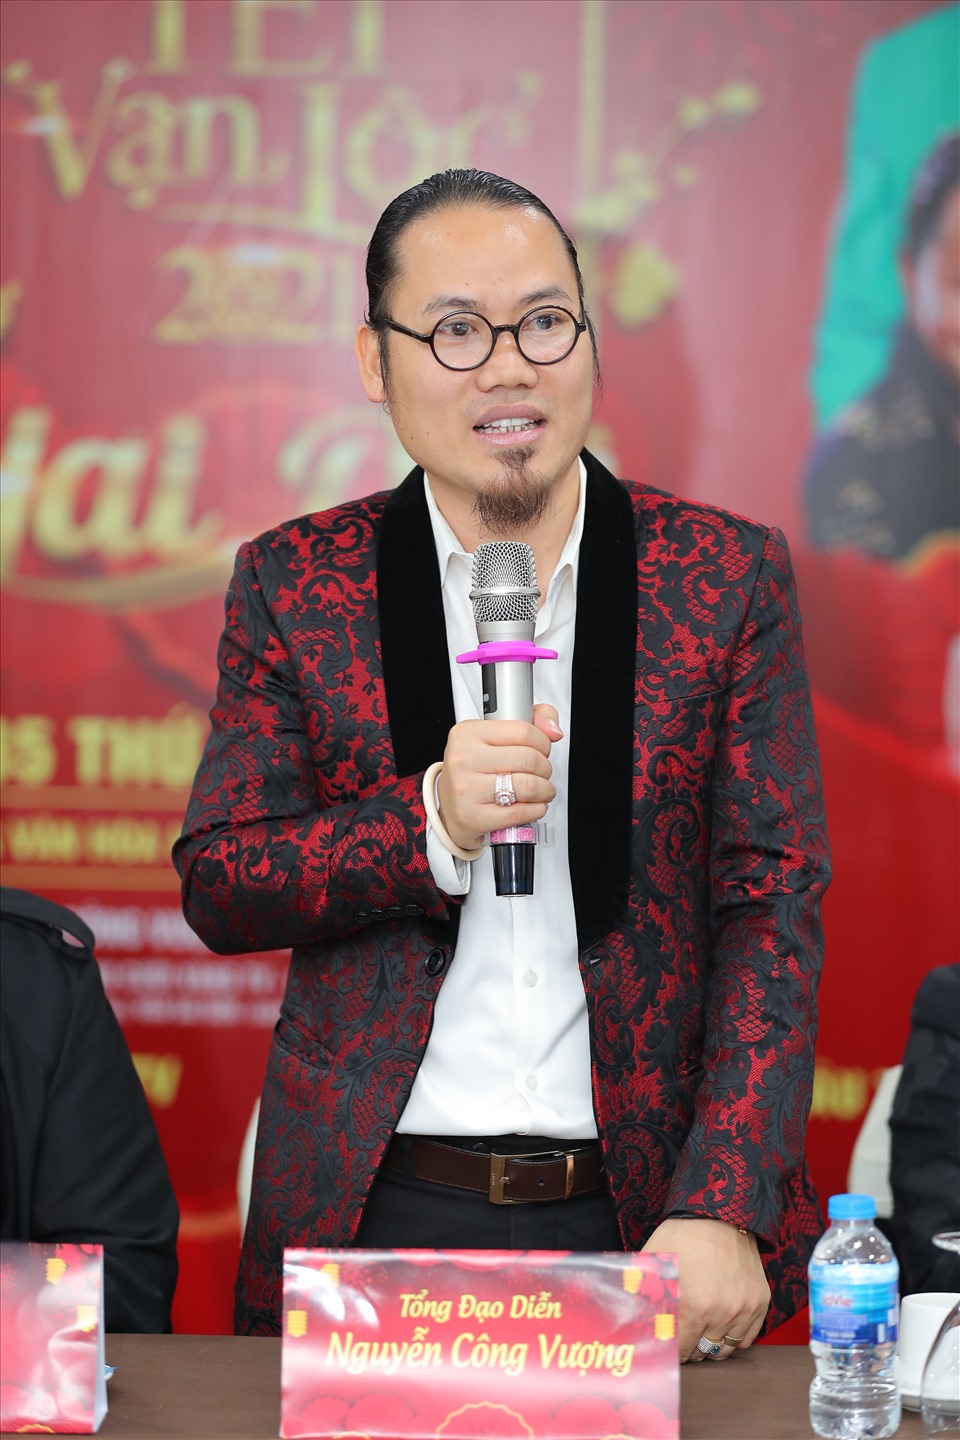 Đạo diễn Nguyễn Công Vượng bật mí nhiều thông tin thú vị trong chương trình “Tết vạn lộc 2021” sắp tới. Ảnh: BTC.